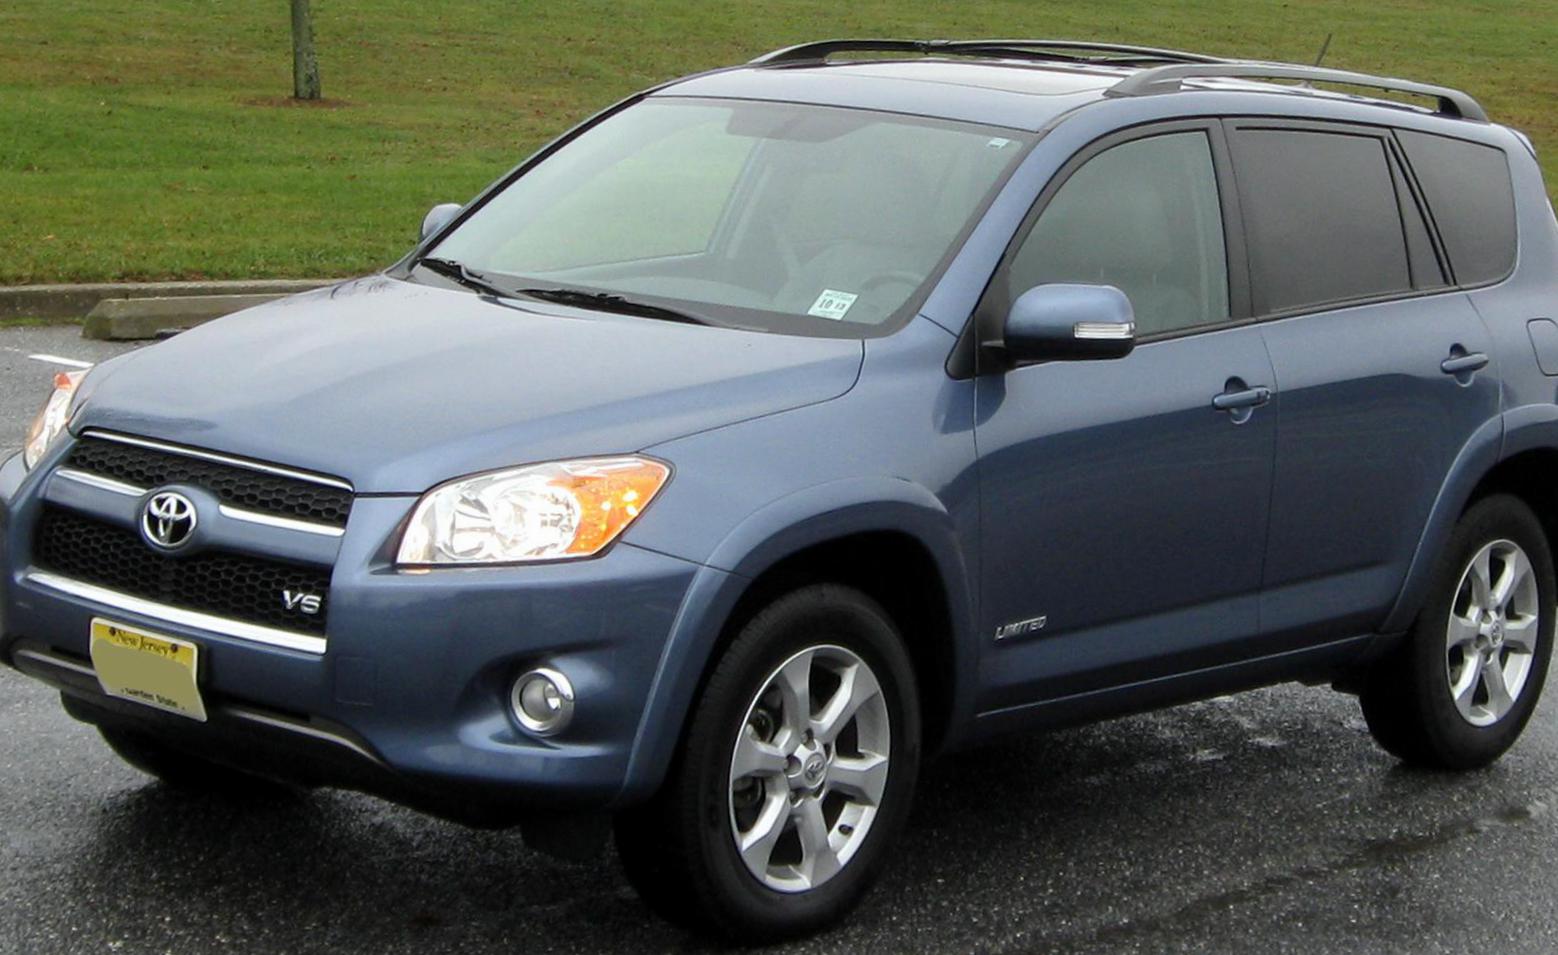 RAV4 Toyota used 2012